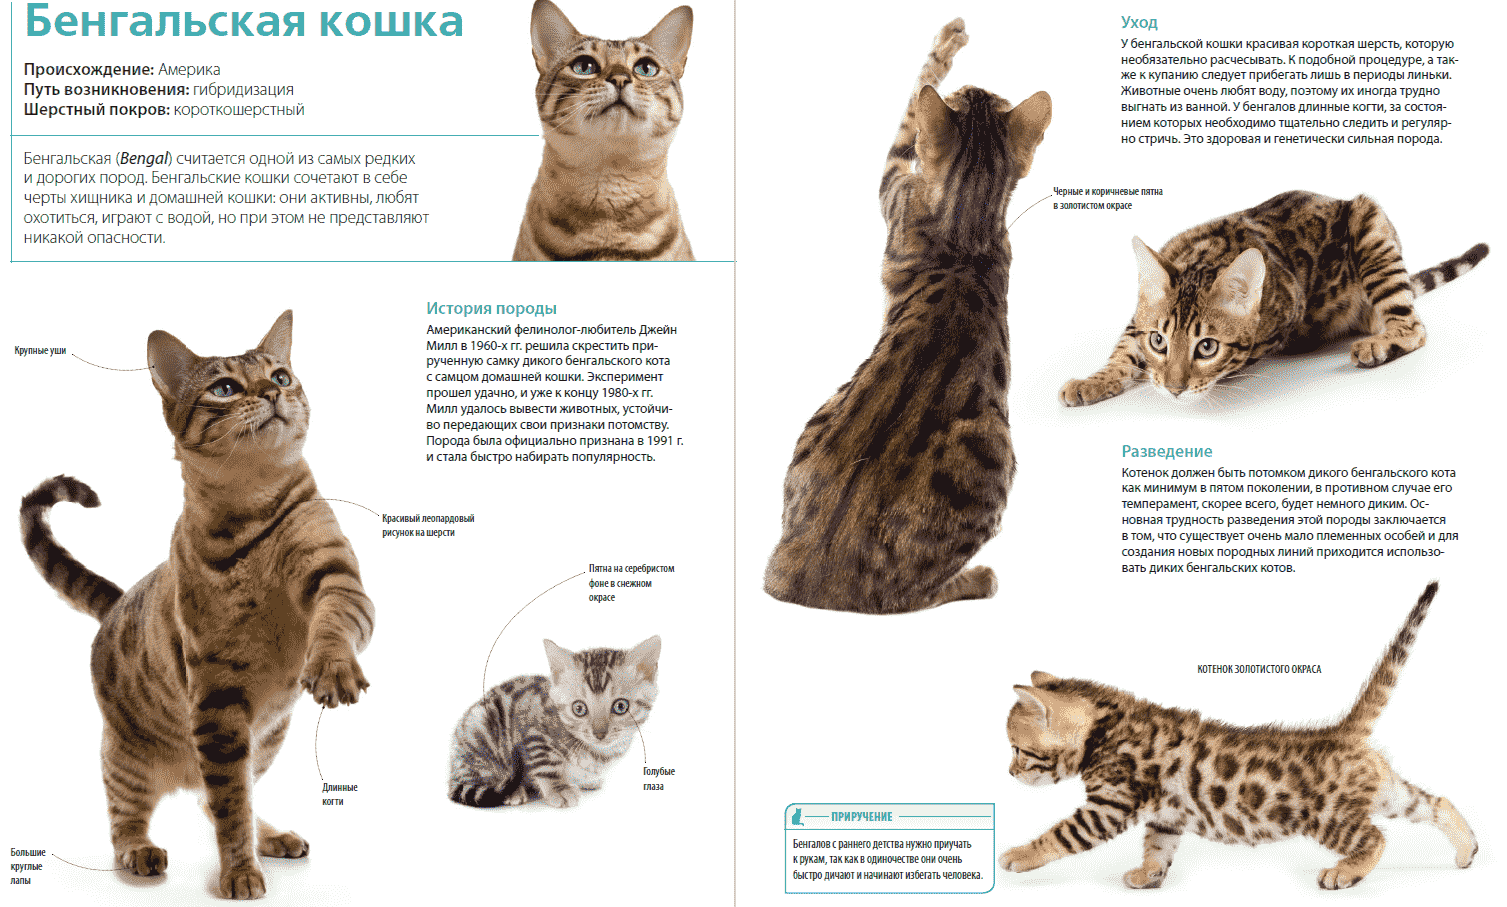 Бенгальская кошка: описание и характер породы, кормление